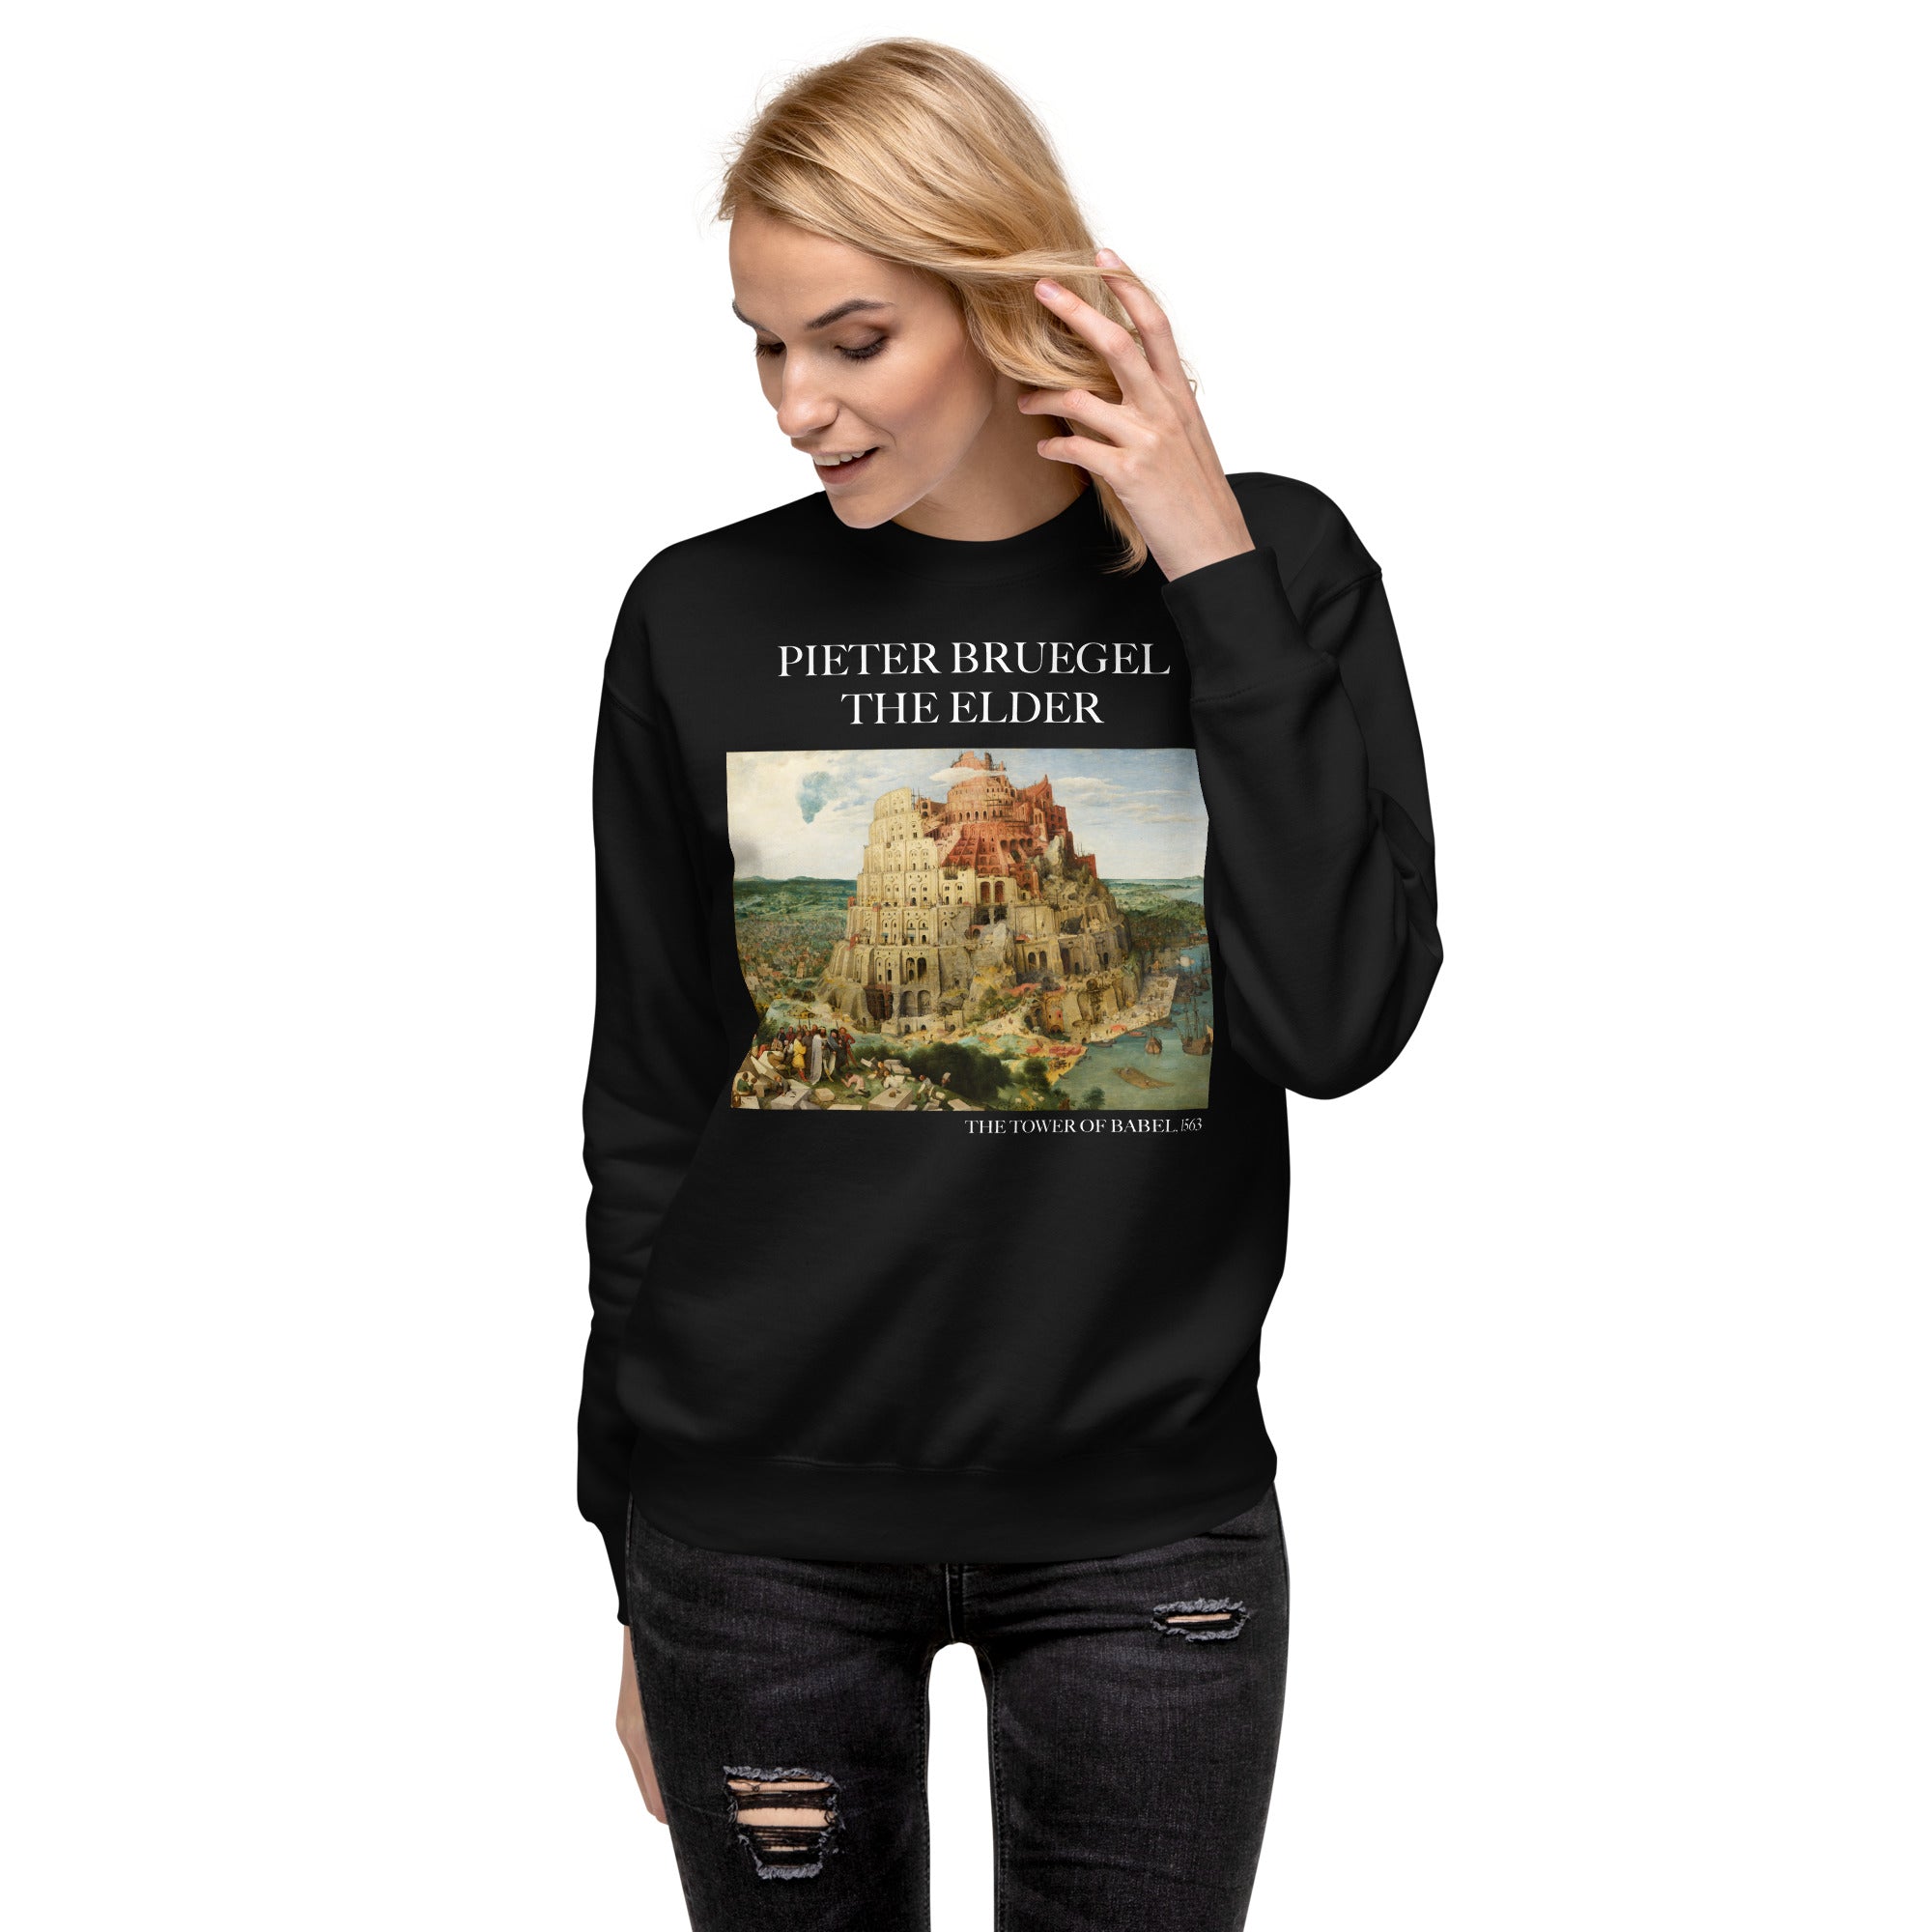 Pieter Bruegel the Elder 'The Tower of Babel' Famous Painting Sweatshirt | Unisex Premium Sweatshirt